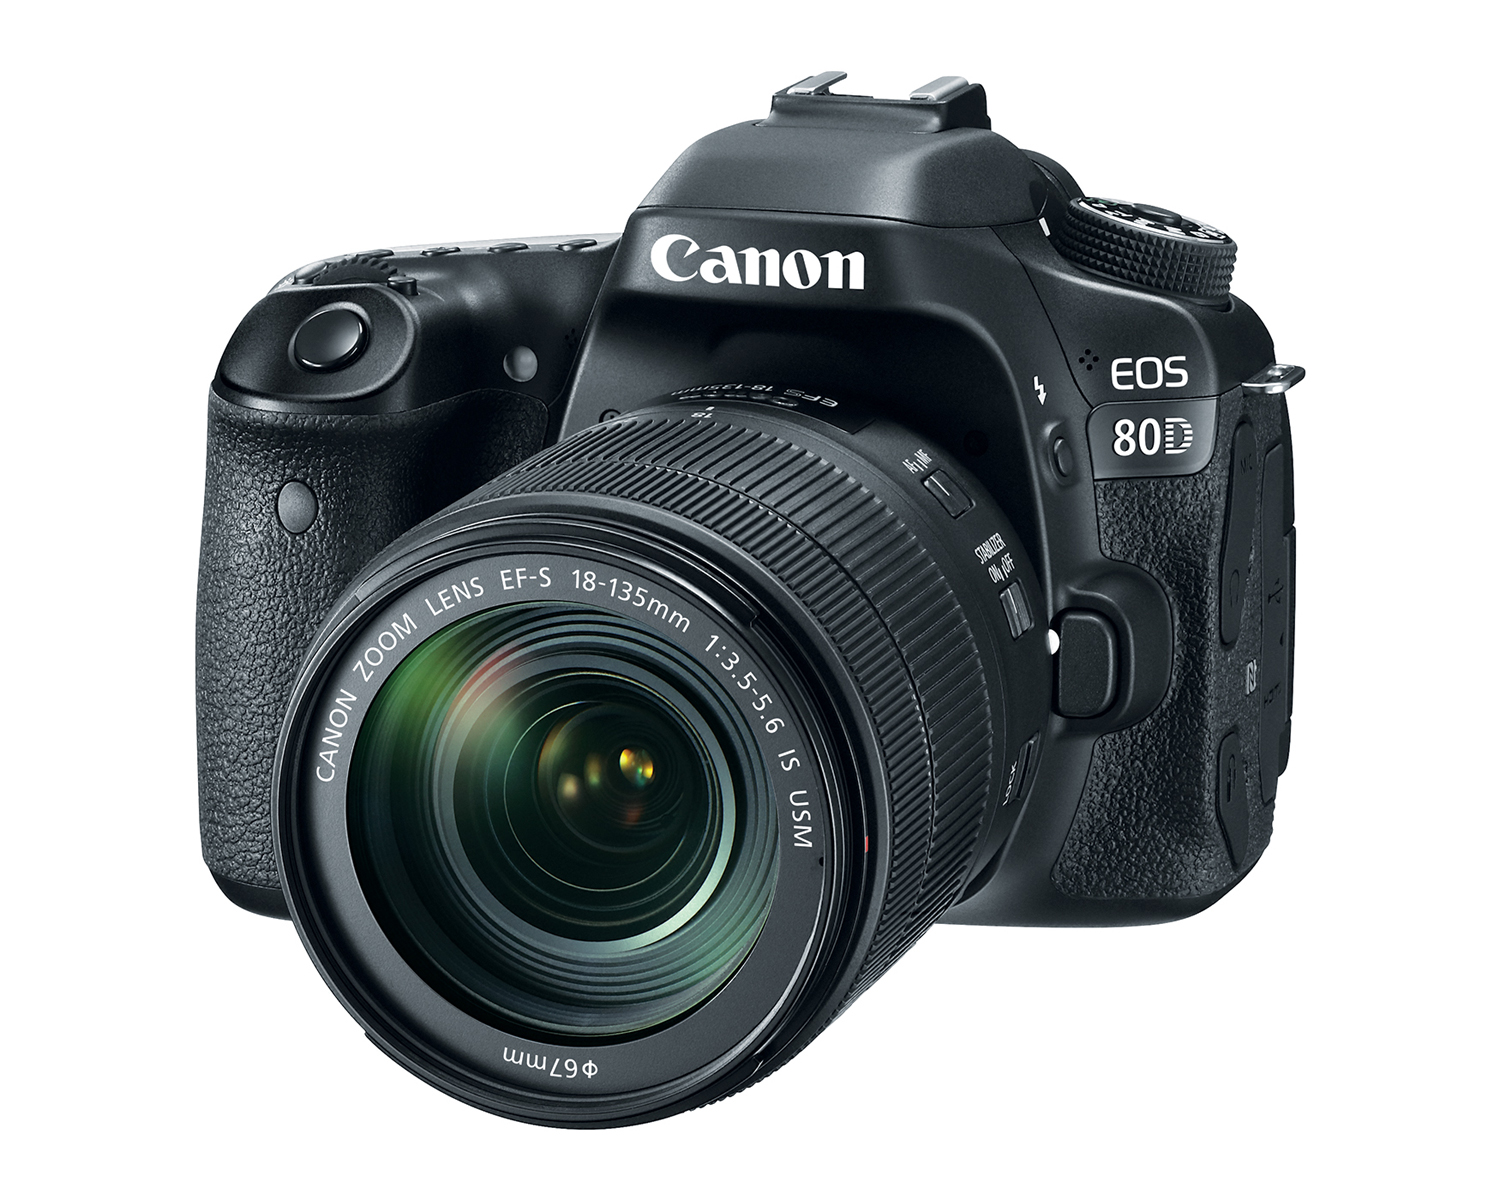 Sử dụng Canon 80D không chỉ giúp bạn chụp các bức ảnh chất lượng cao mà còn giúp bạn dễ dàng tùy chỉnh các thông số ảnh theo ý muốn. Hãy xem hình ảnh liên quan để tìm hiểu thêm về cách sử dụng máy ảnh Canon 80D nhé!